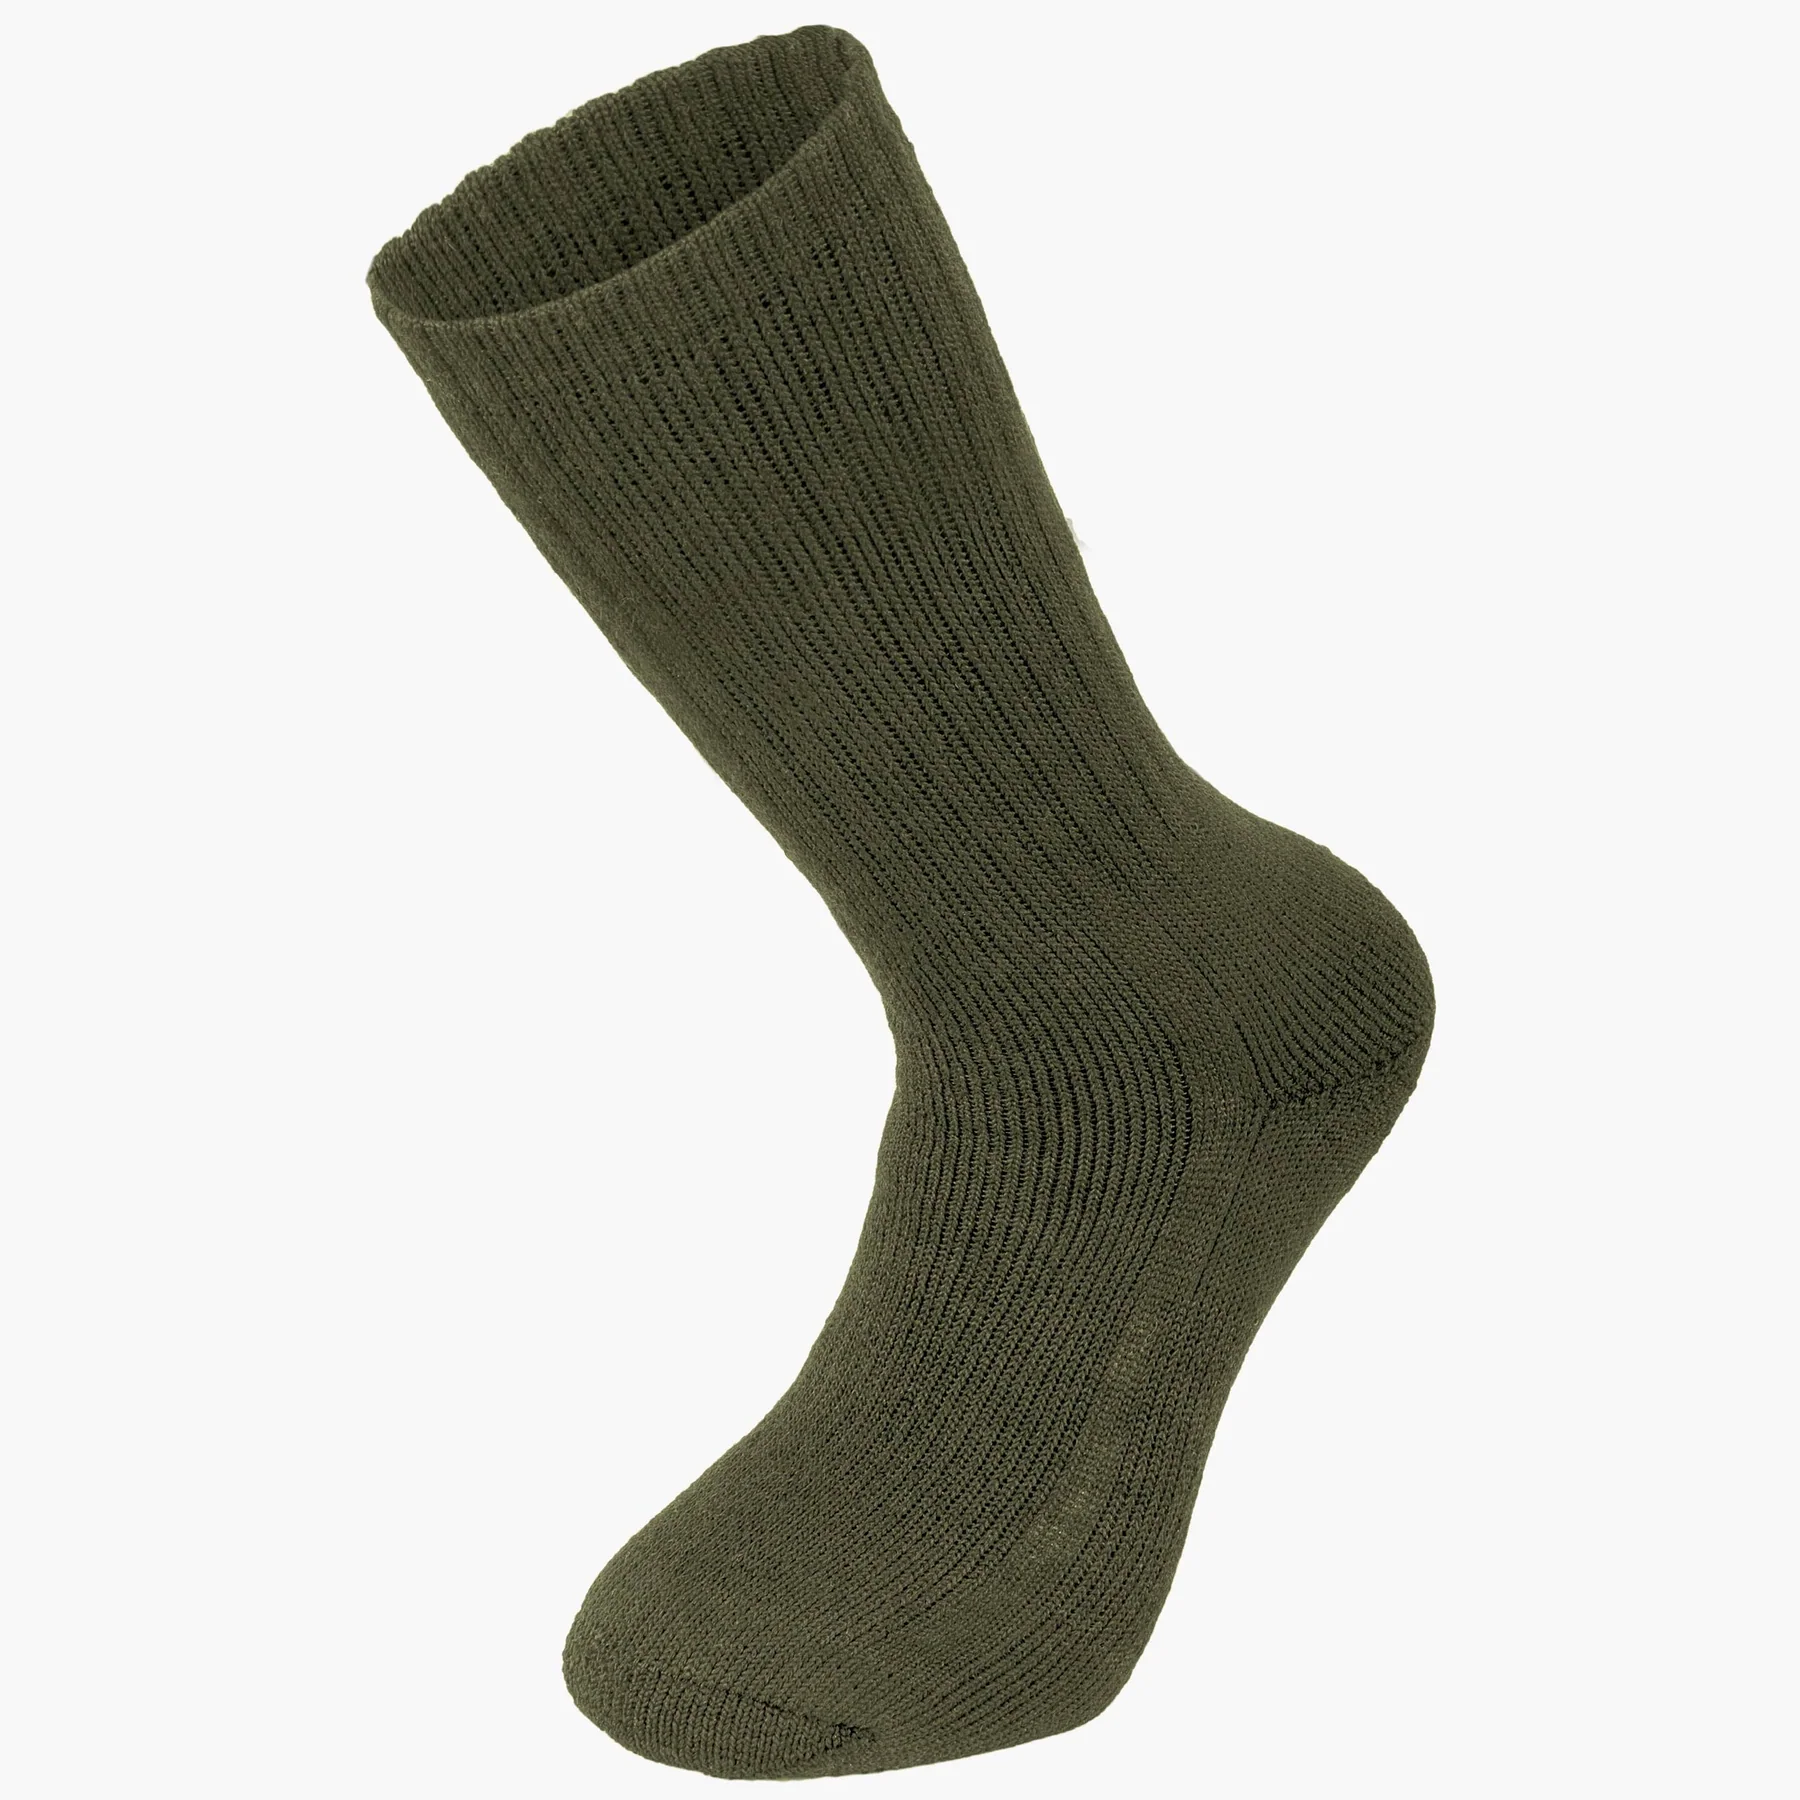 Highlander Forces Norwegian Socks- Olive